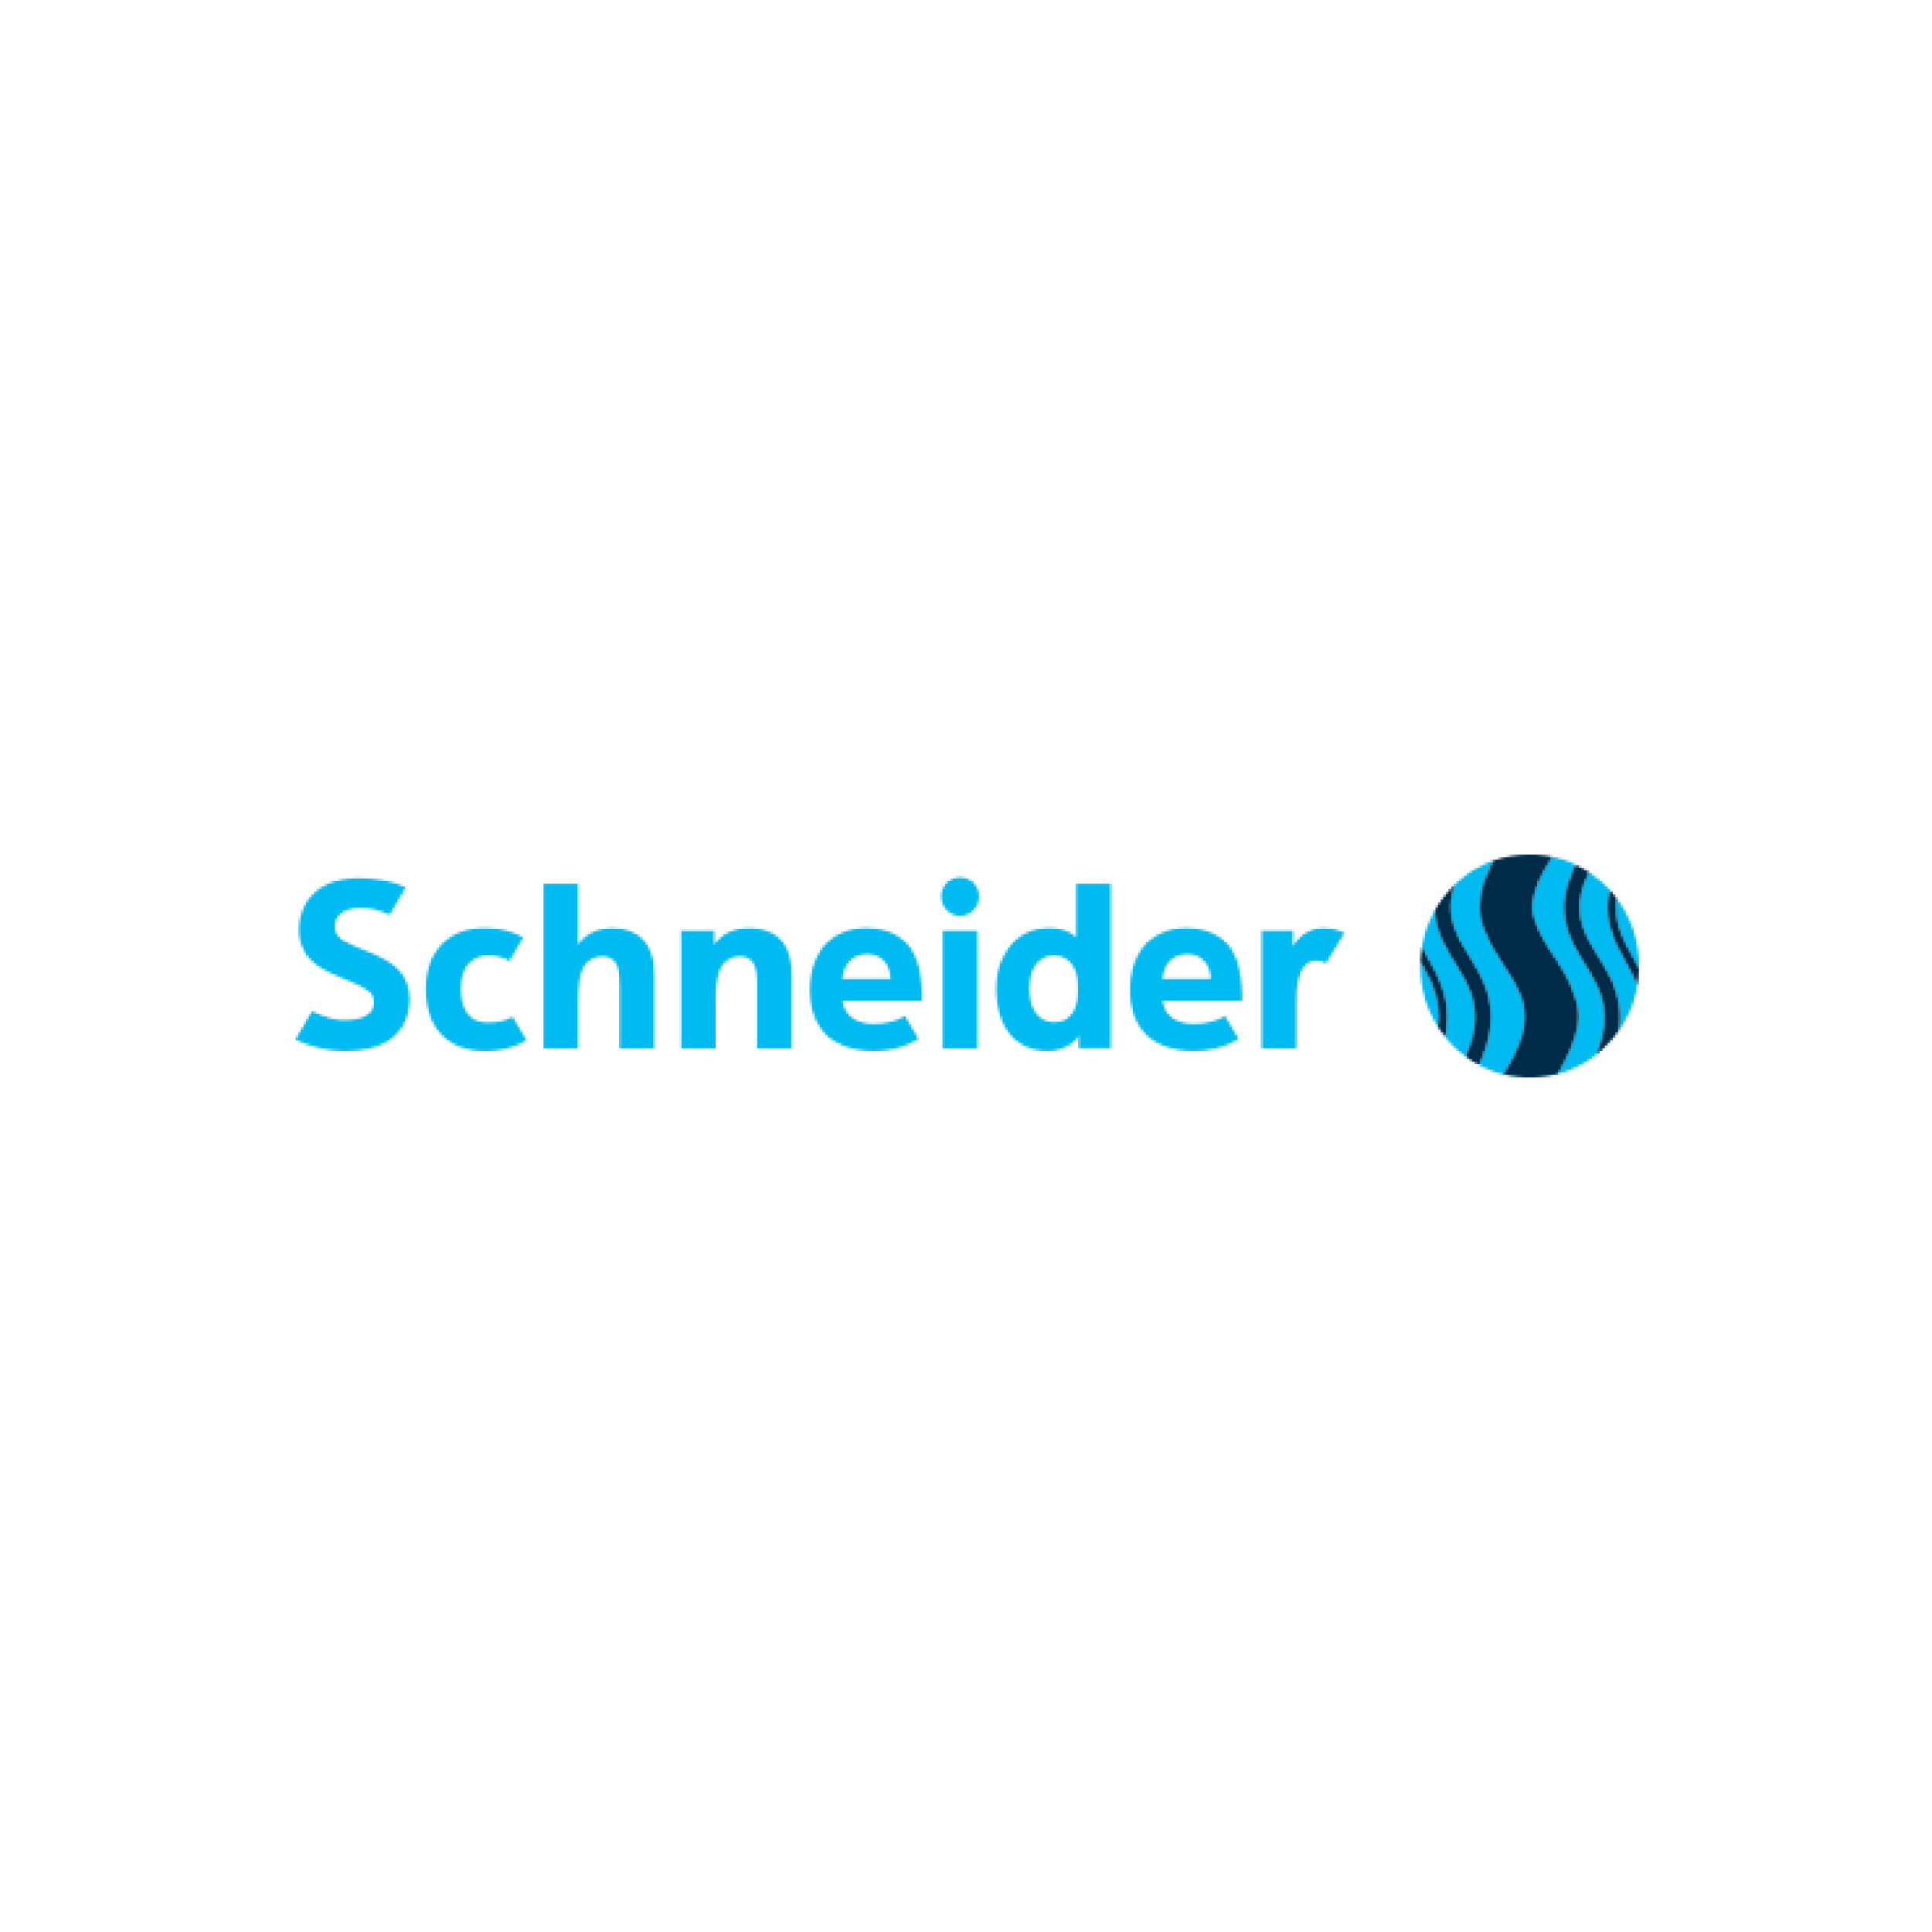 Schneider Inkt & Vulling